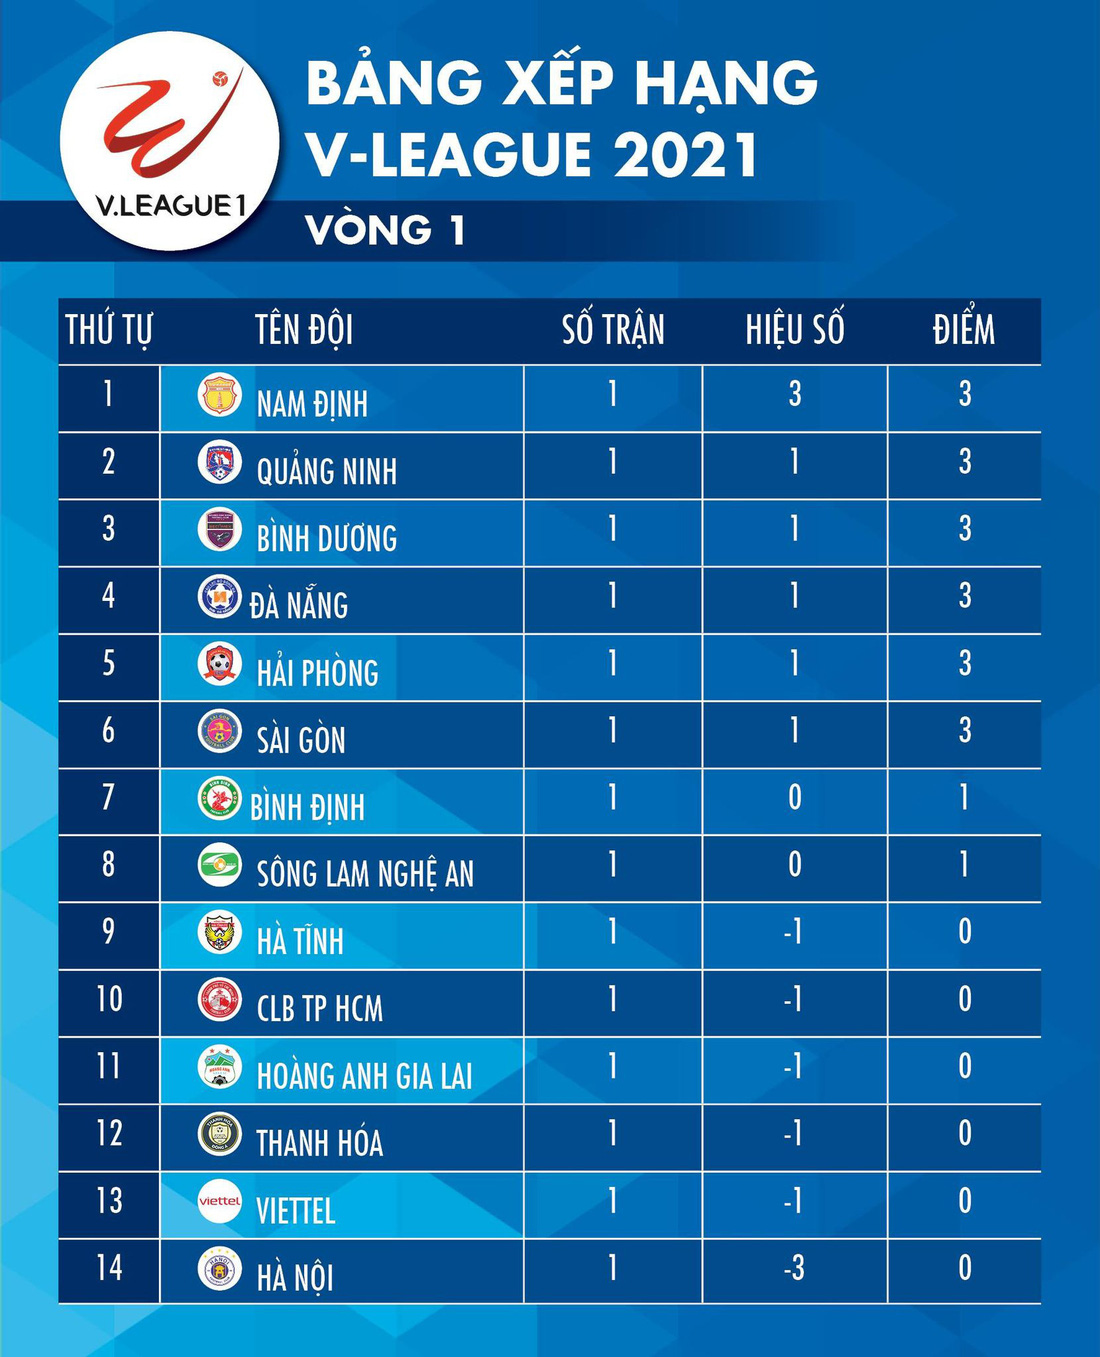 Kết quả, bảng xếp hạng V-League 2021: Hà Nội, Viettel, HAGL ở nhóm cuối bảng - Ảnh 2.